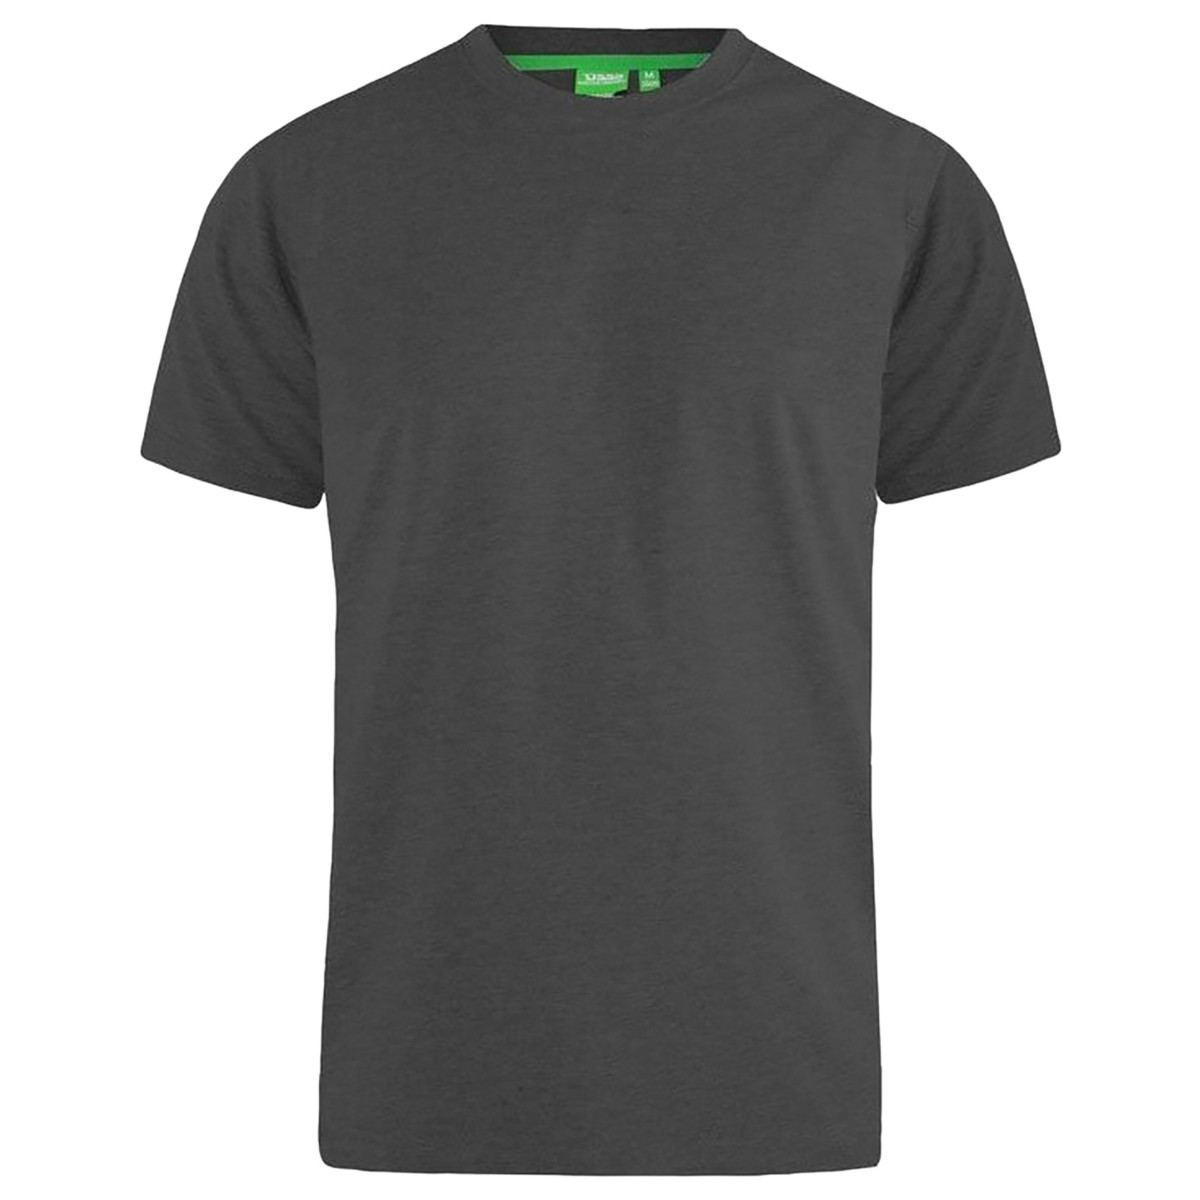 Vêtements Homme T-shirts manches longues Duke Flyers-2 Gris